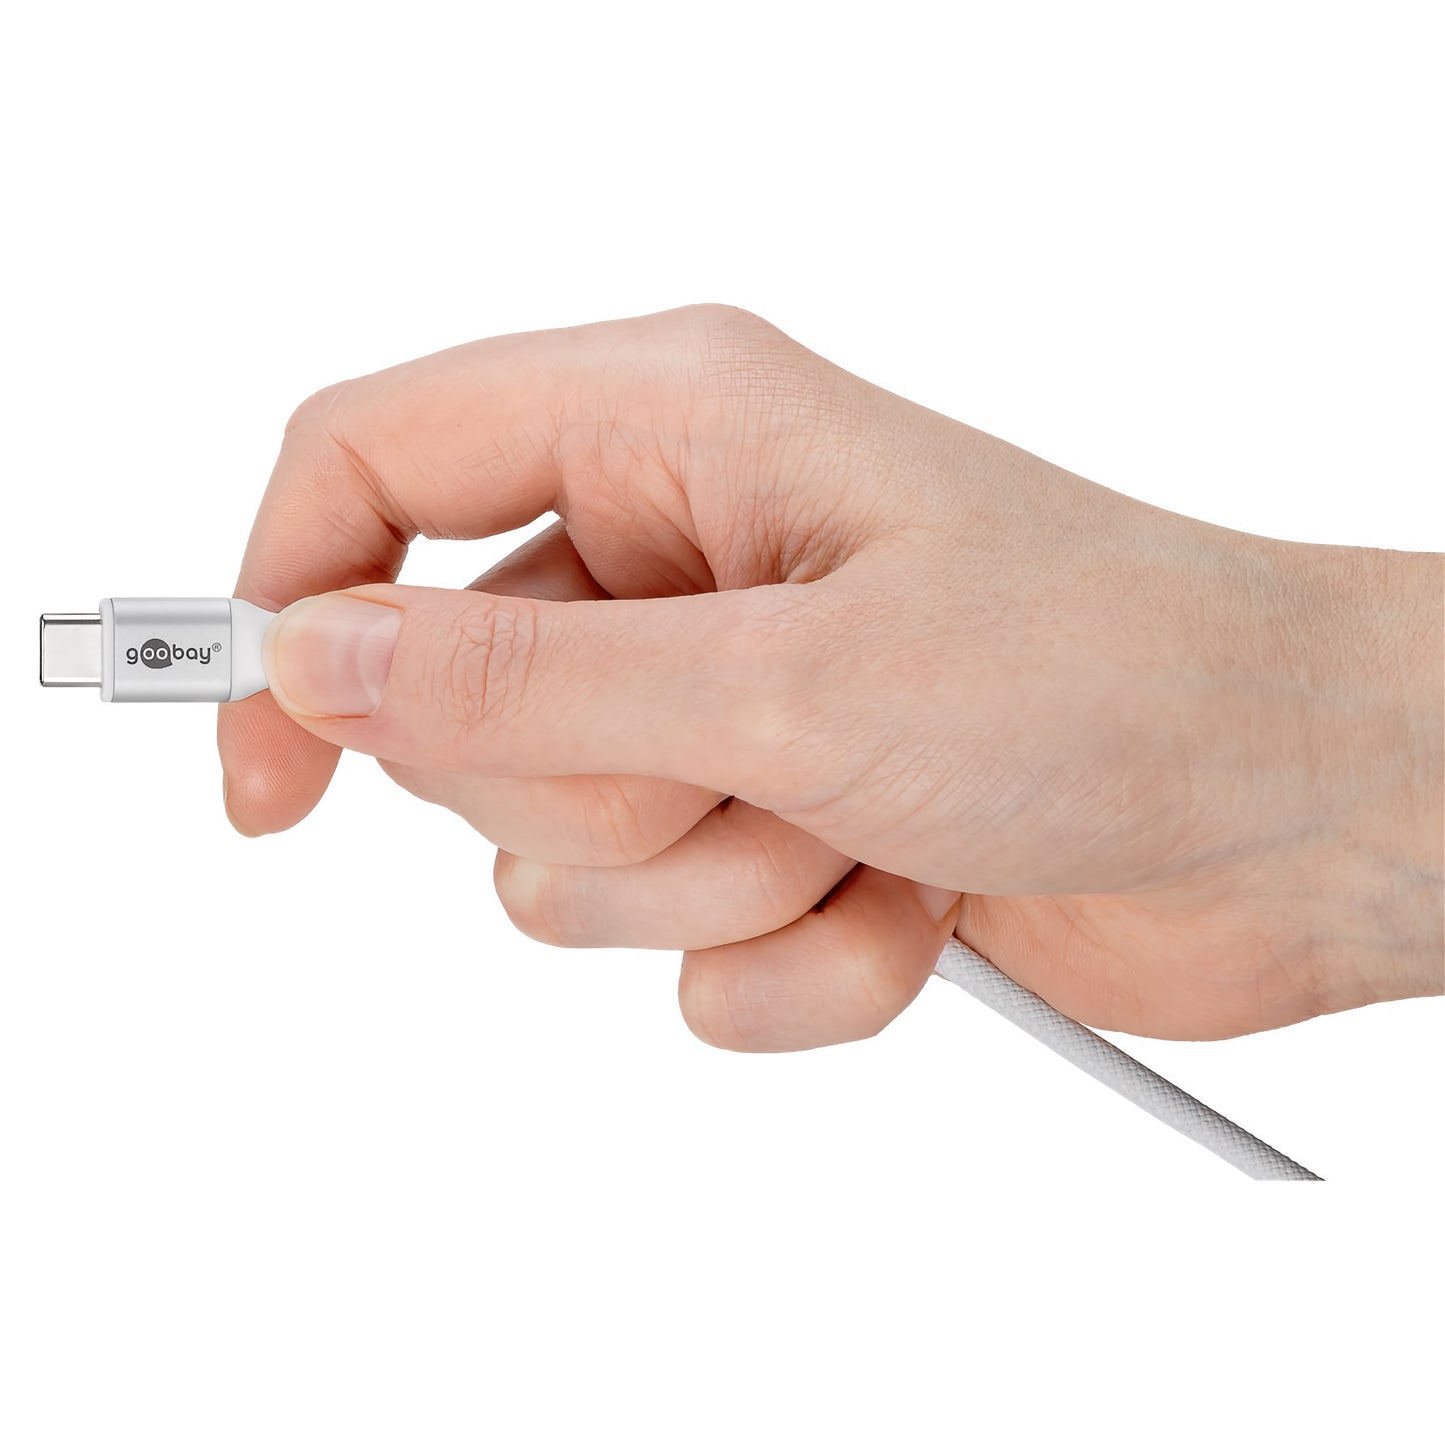 USB-C auf USB-C Kabel Textilkabel mit Metallsteckern